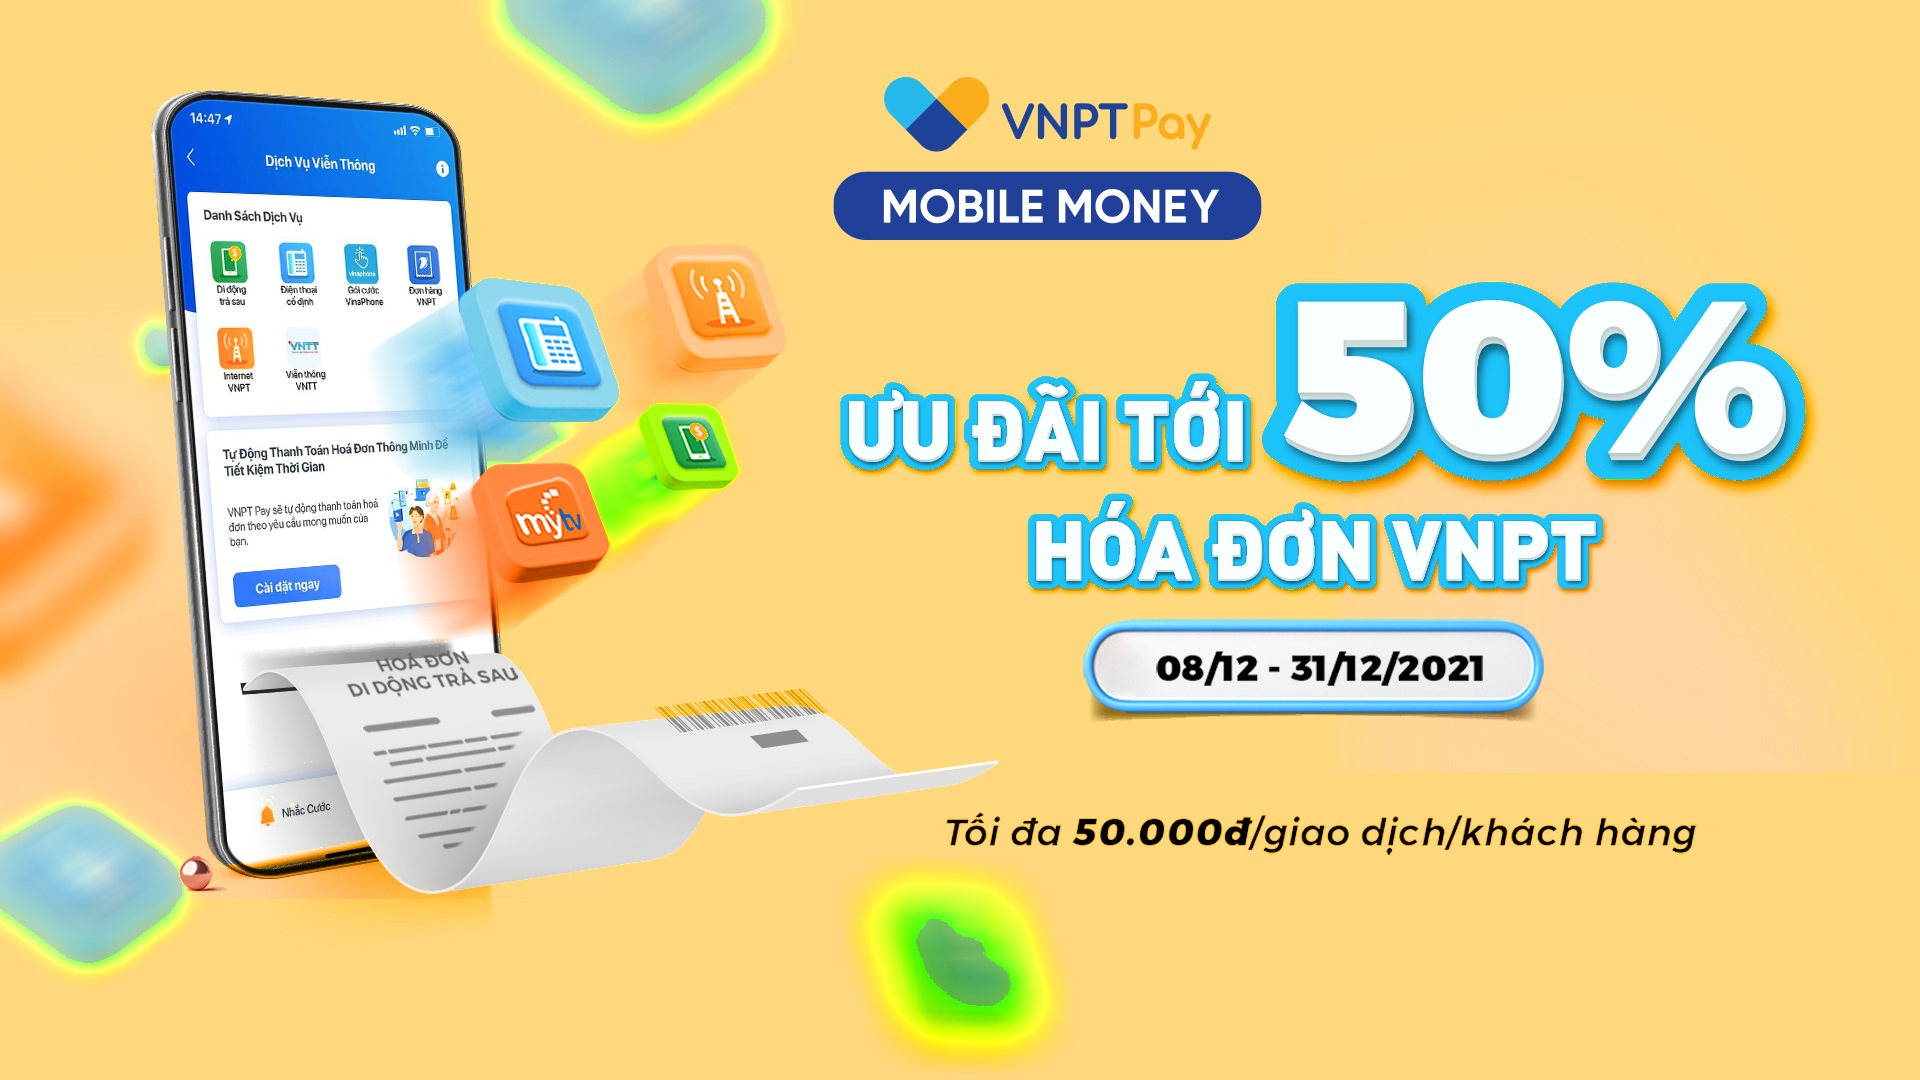 Ưu đãi tới 50% hóa đơn VNPT cho khách hàng sử dụng Mobile Money